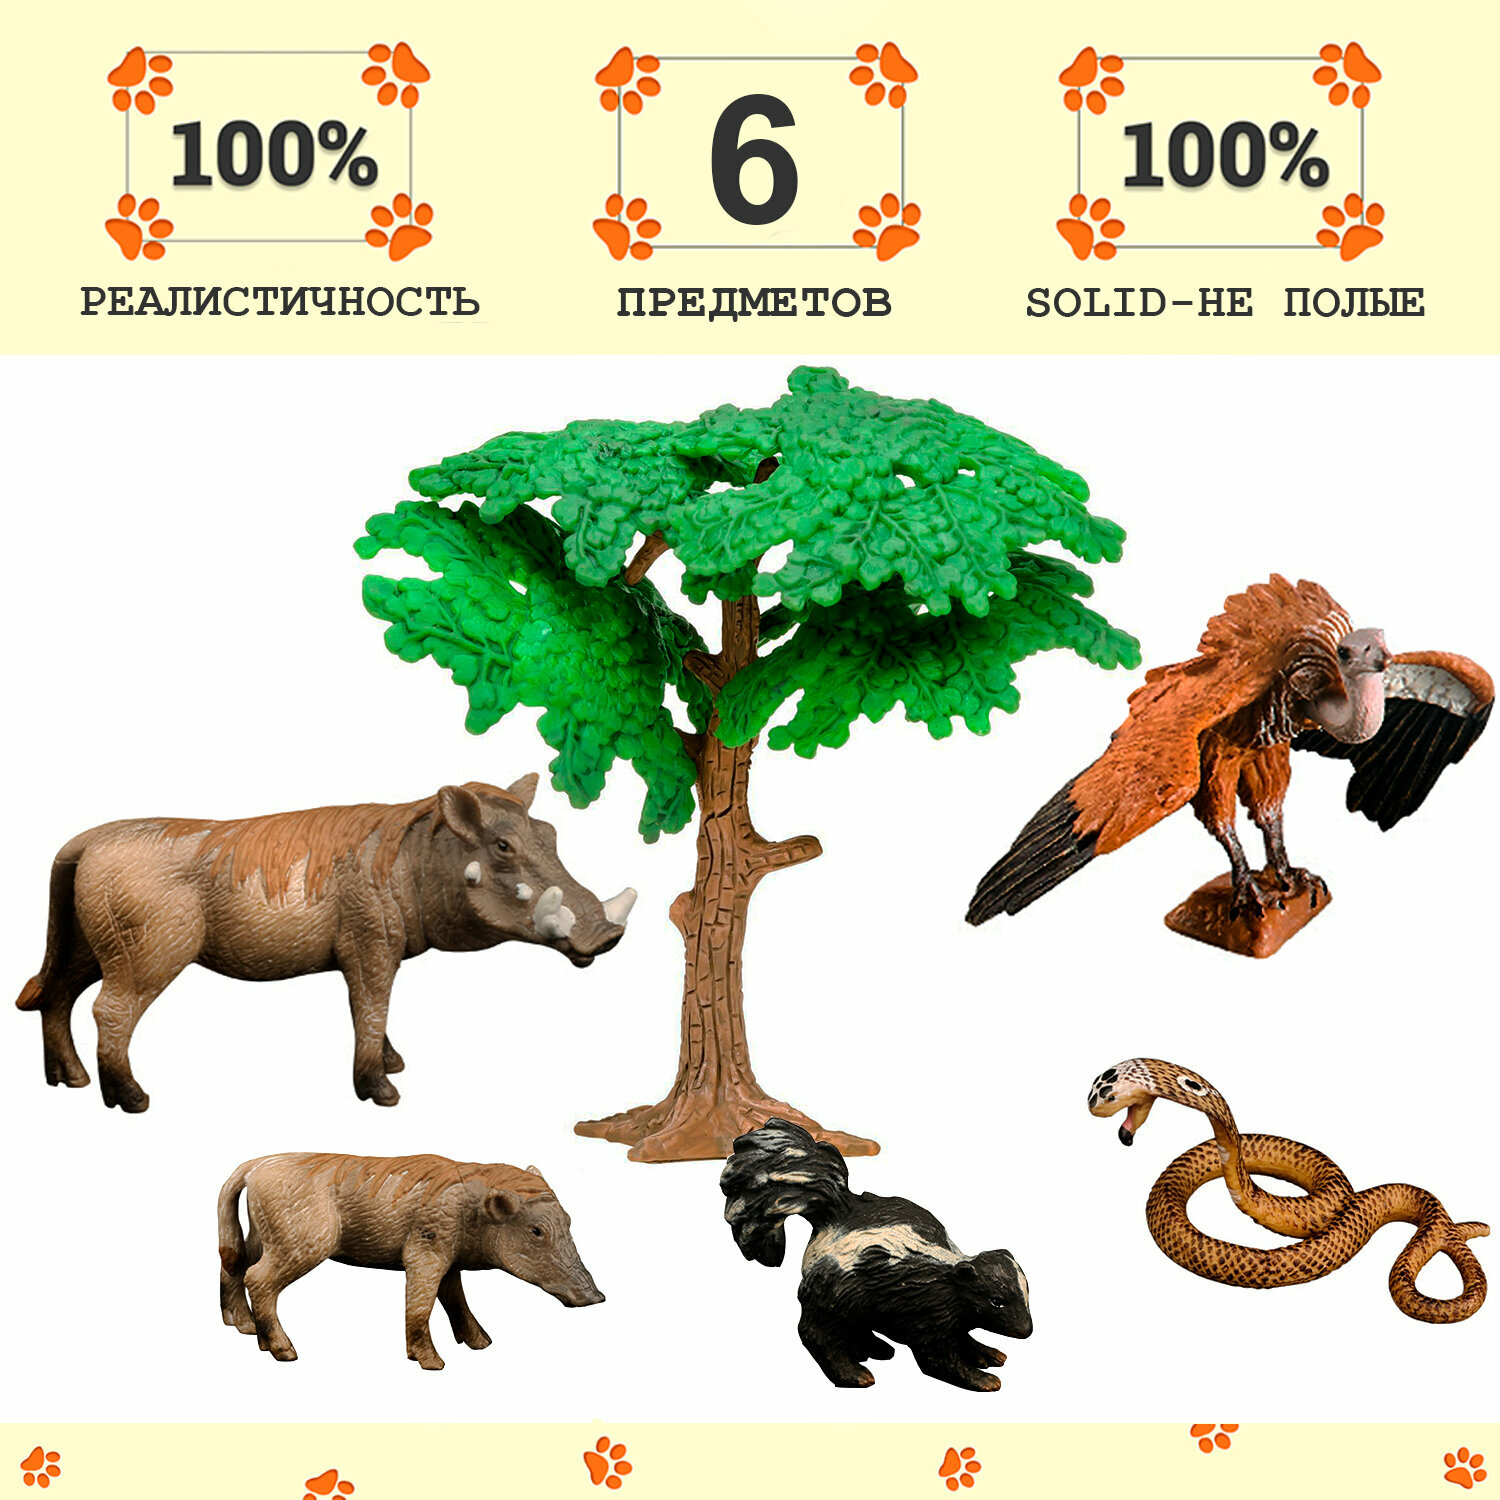 Набор фигурок животных серии "Мир диких животных": скунс, 2 бородавочника, змея, стервятник (набор из 6 фигурок)